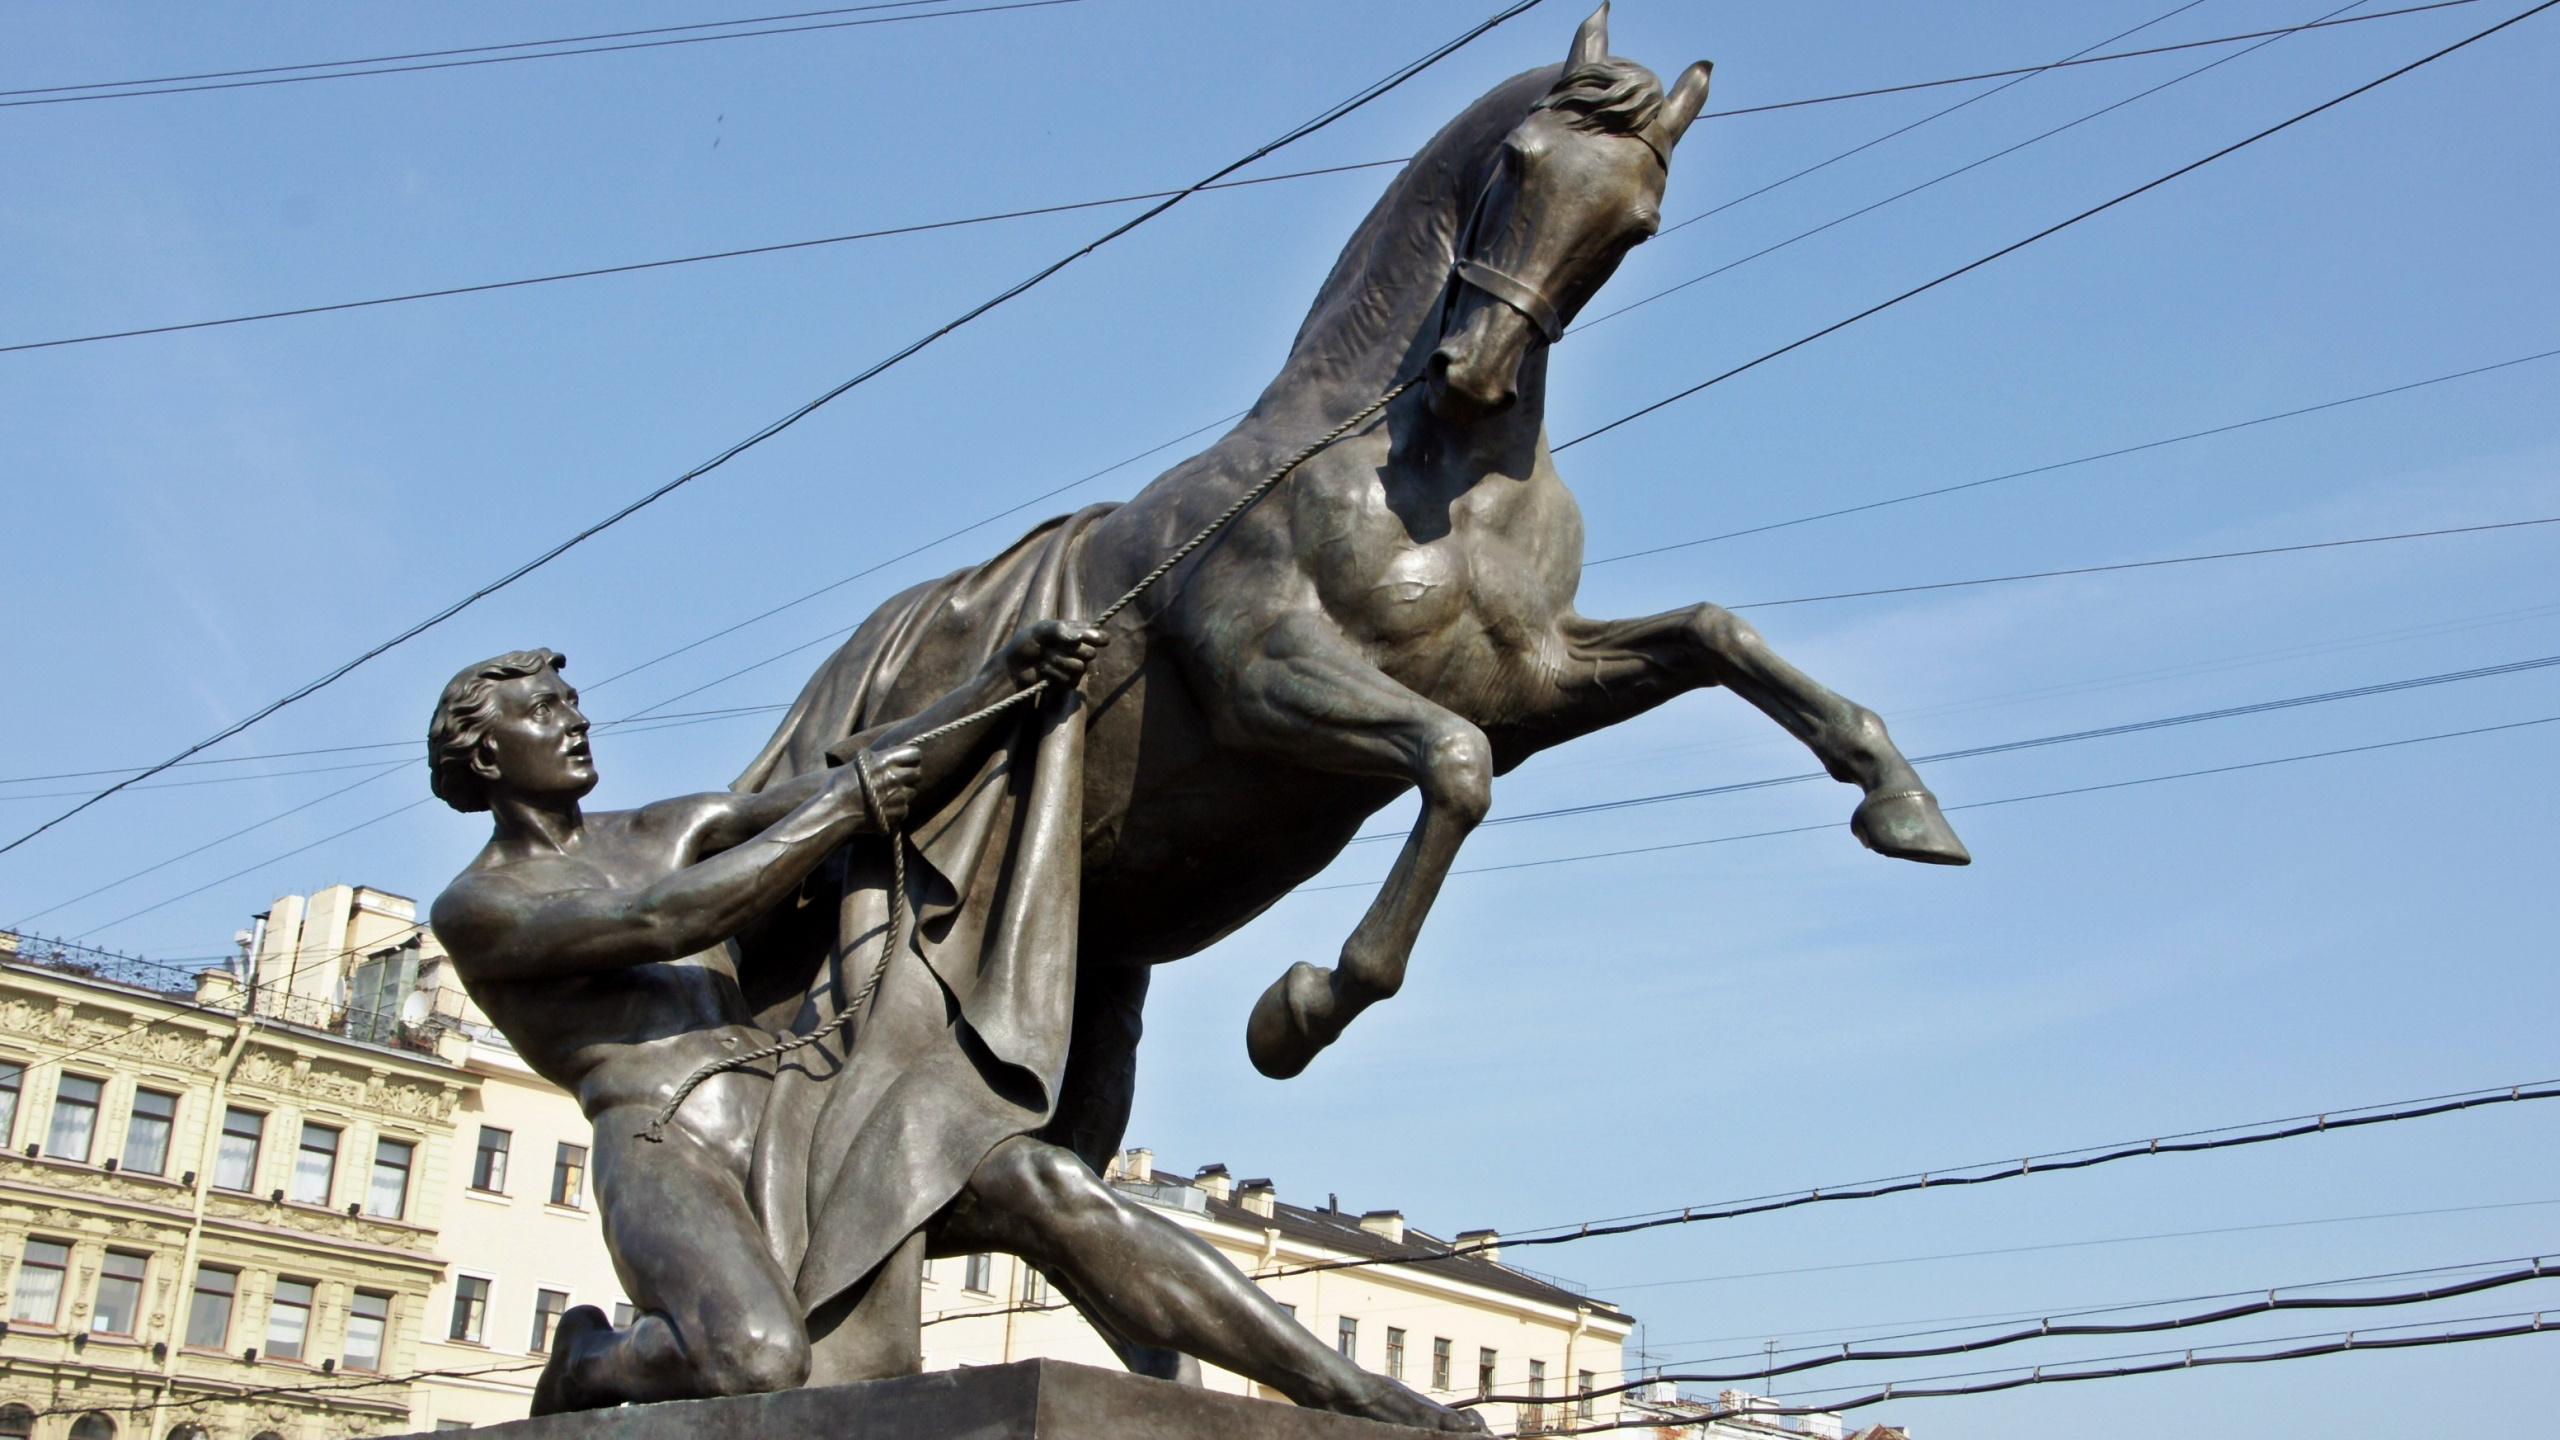 Man Riding Horse Statue Sous Ciel Bleu Pendant la Journée. Wallpaper in 2560x1440 Resolution